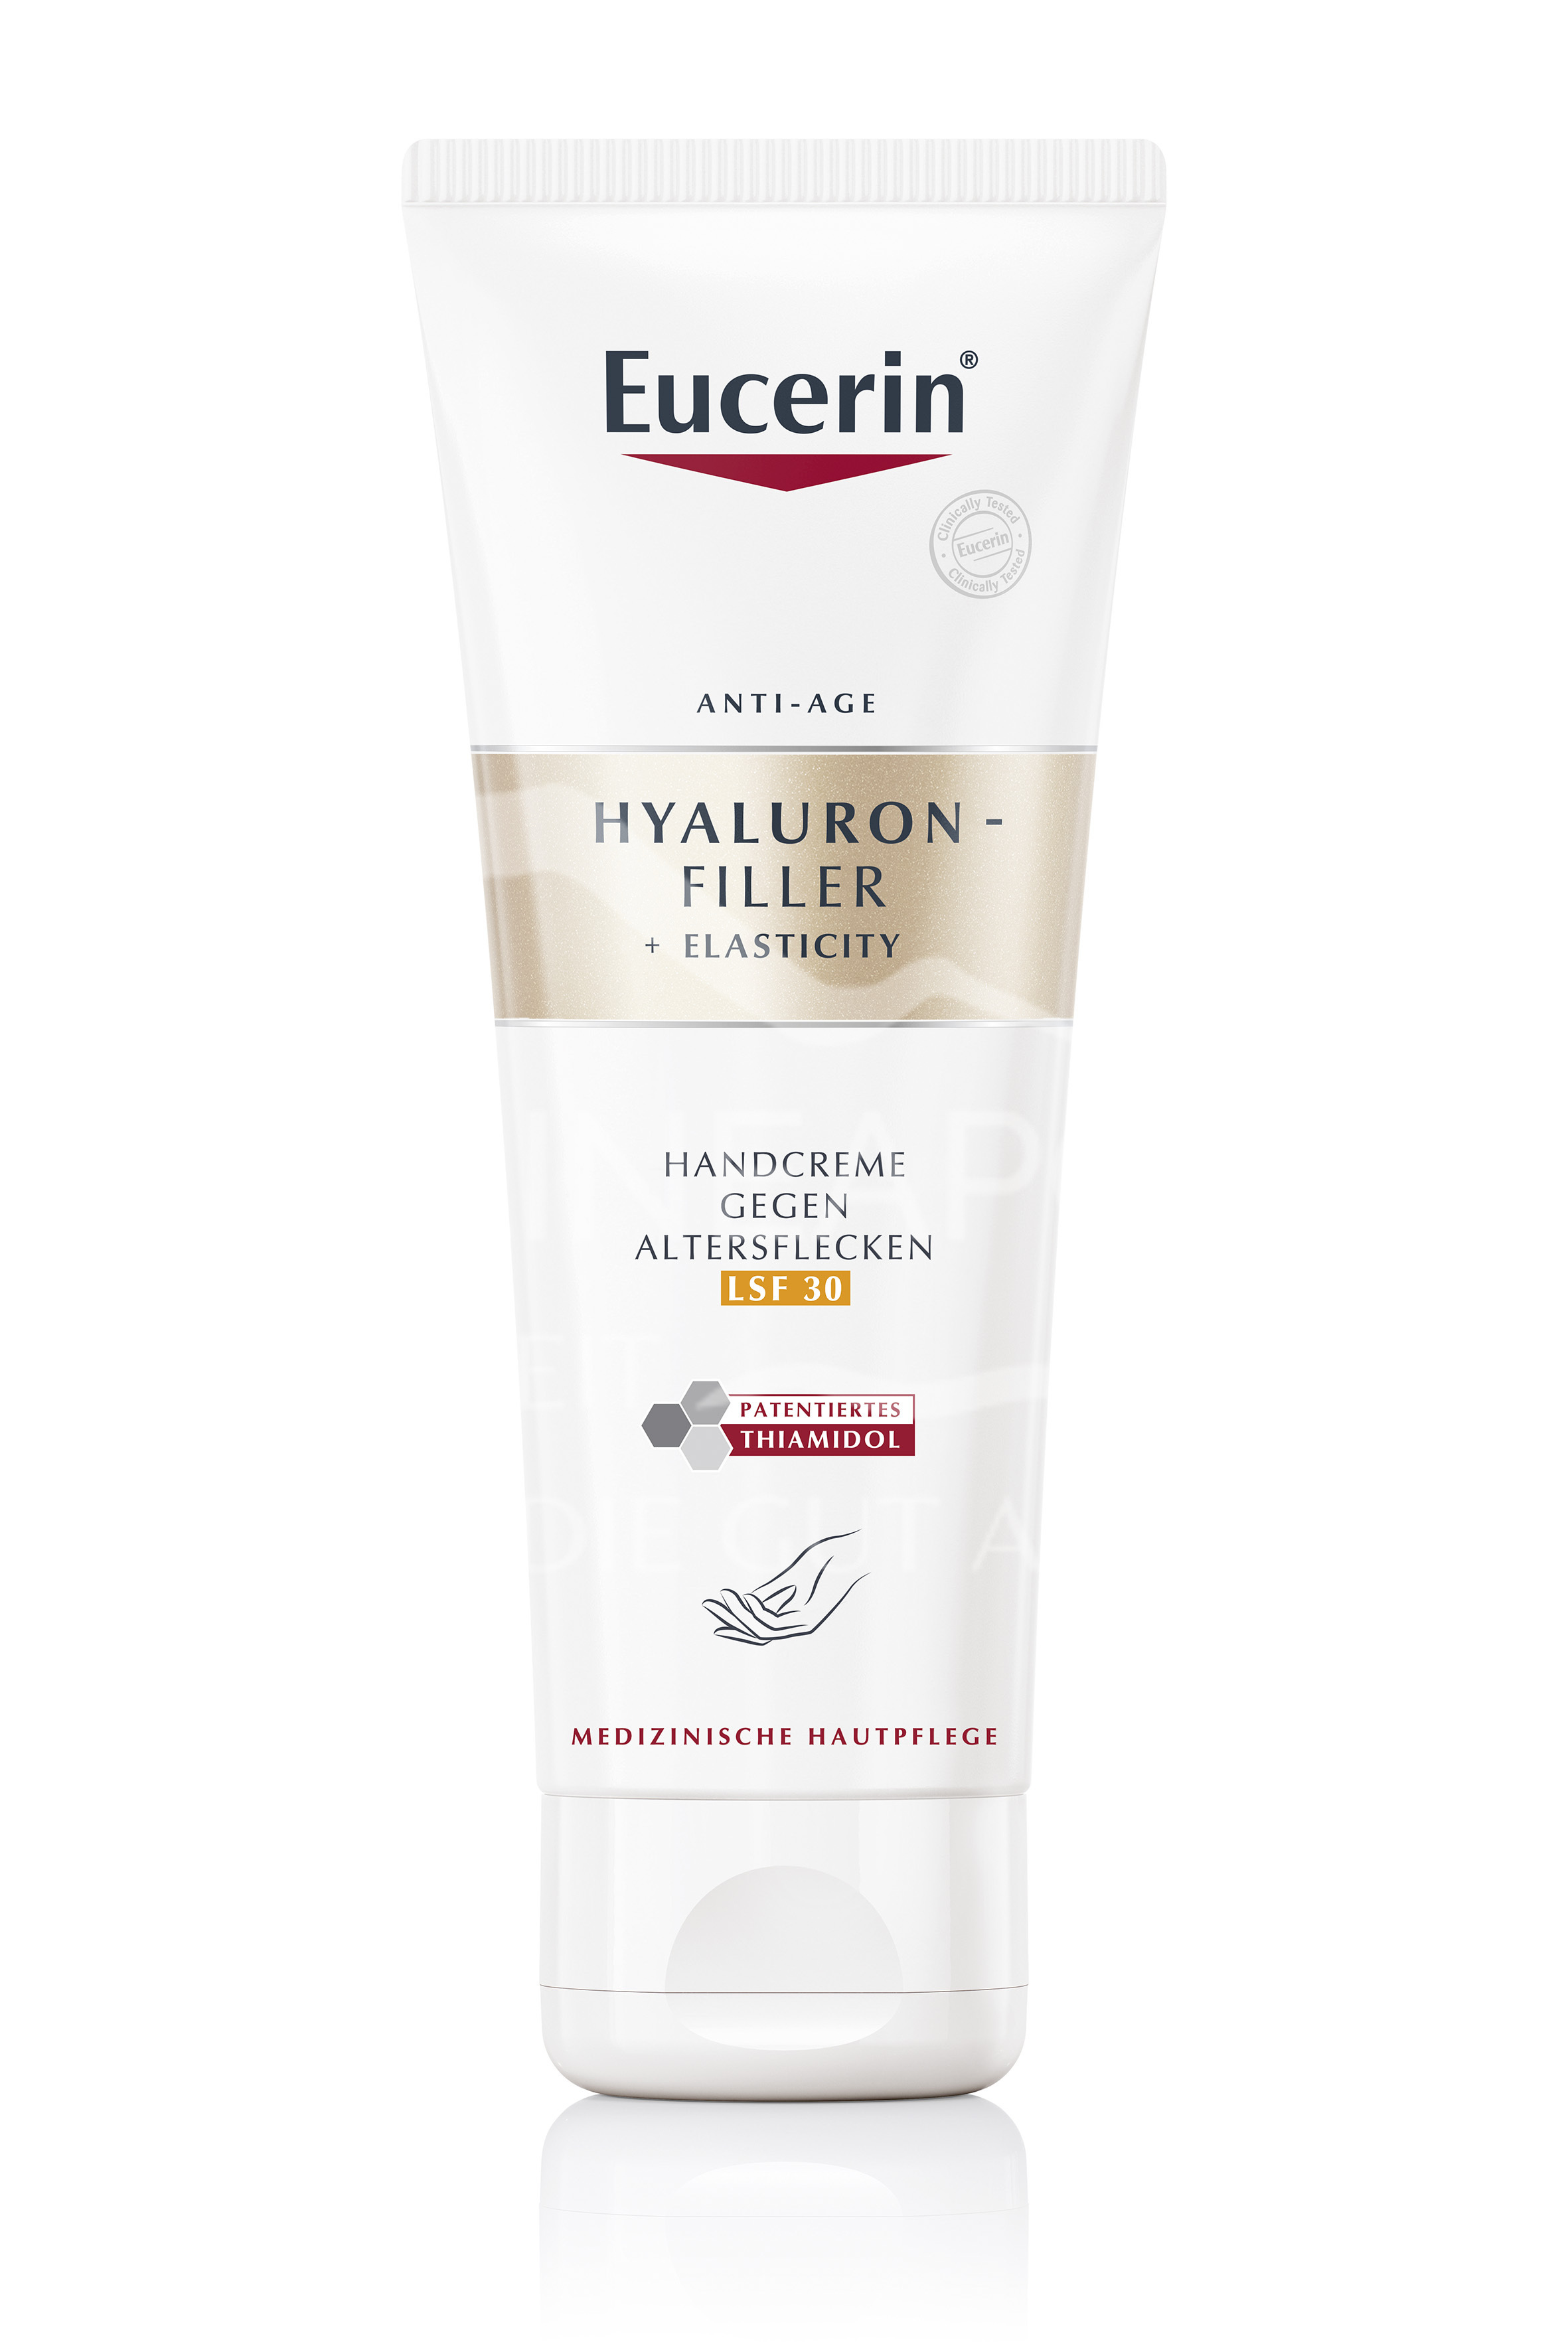 Eucerin® HYALURON-FILLER + ELASTICITY Handcreme